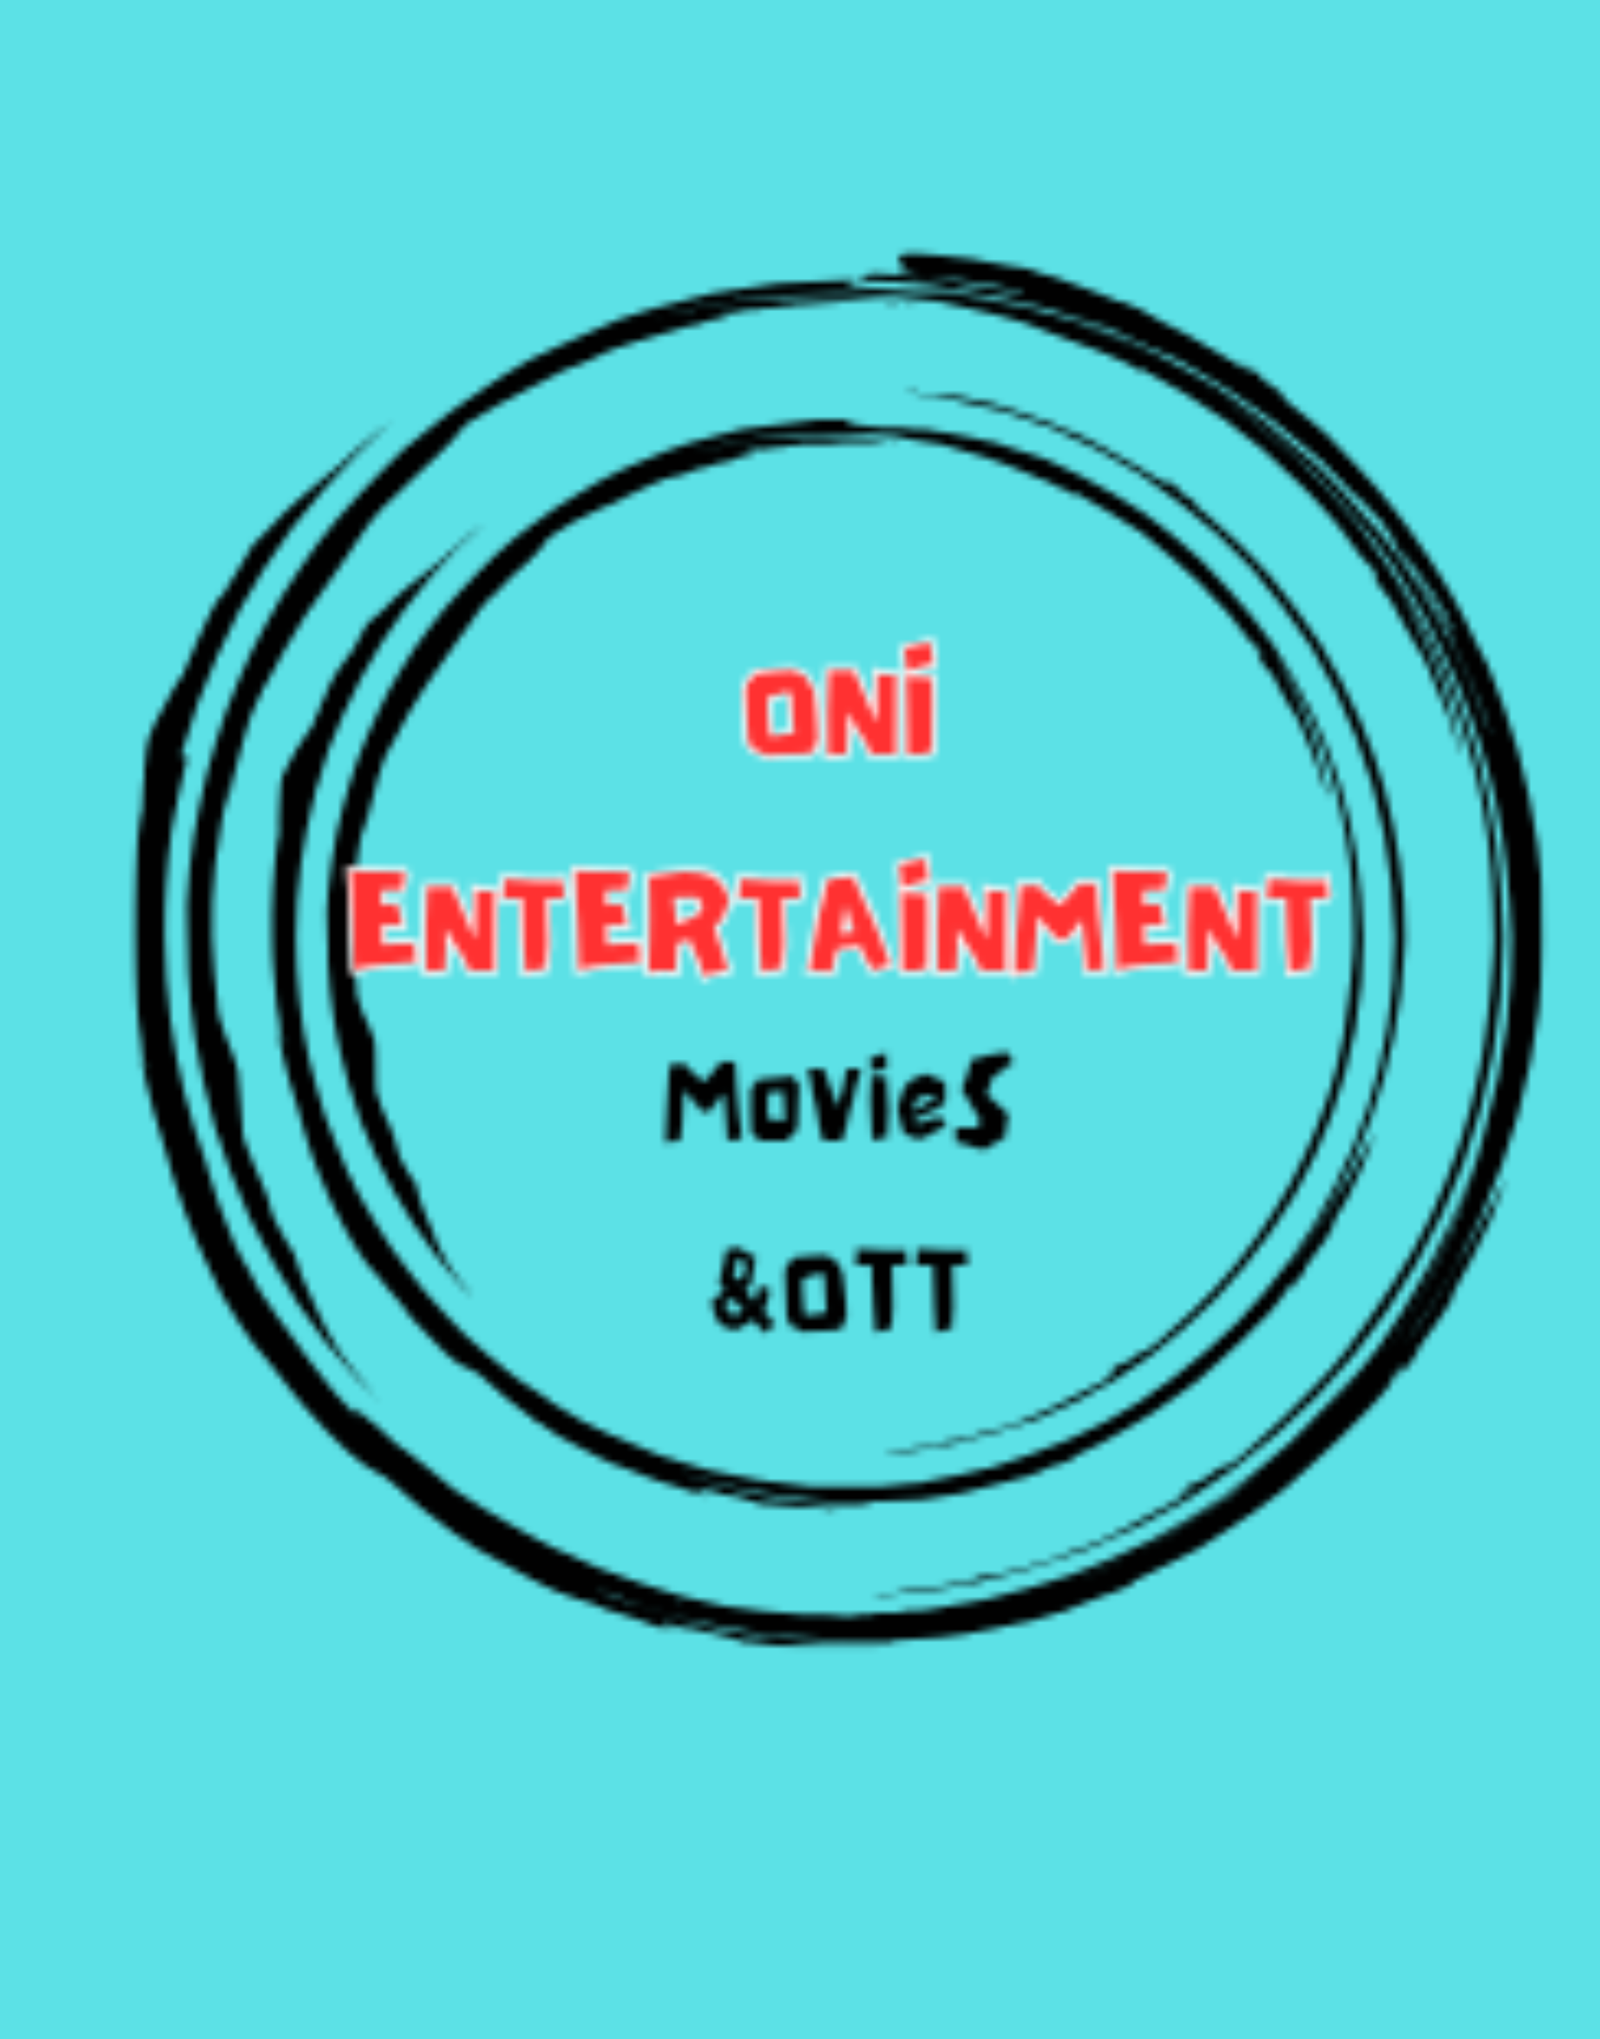 ONI entertainment